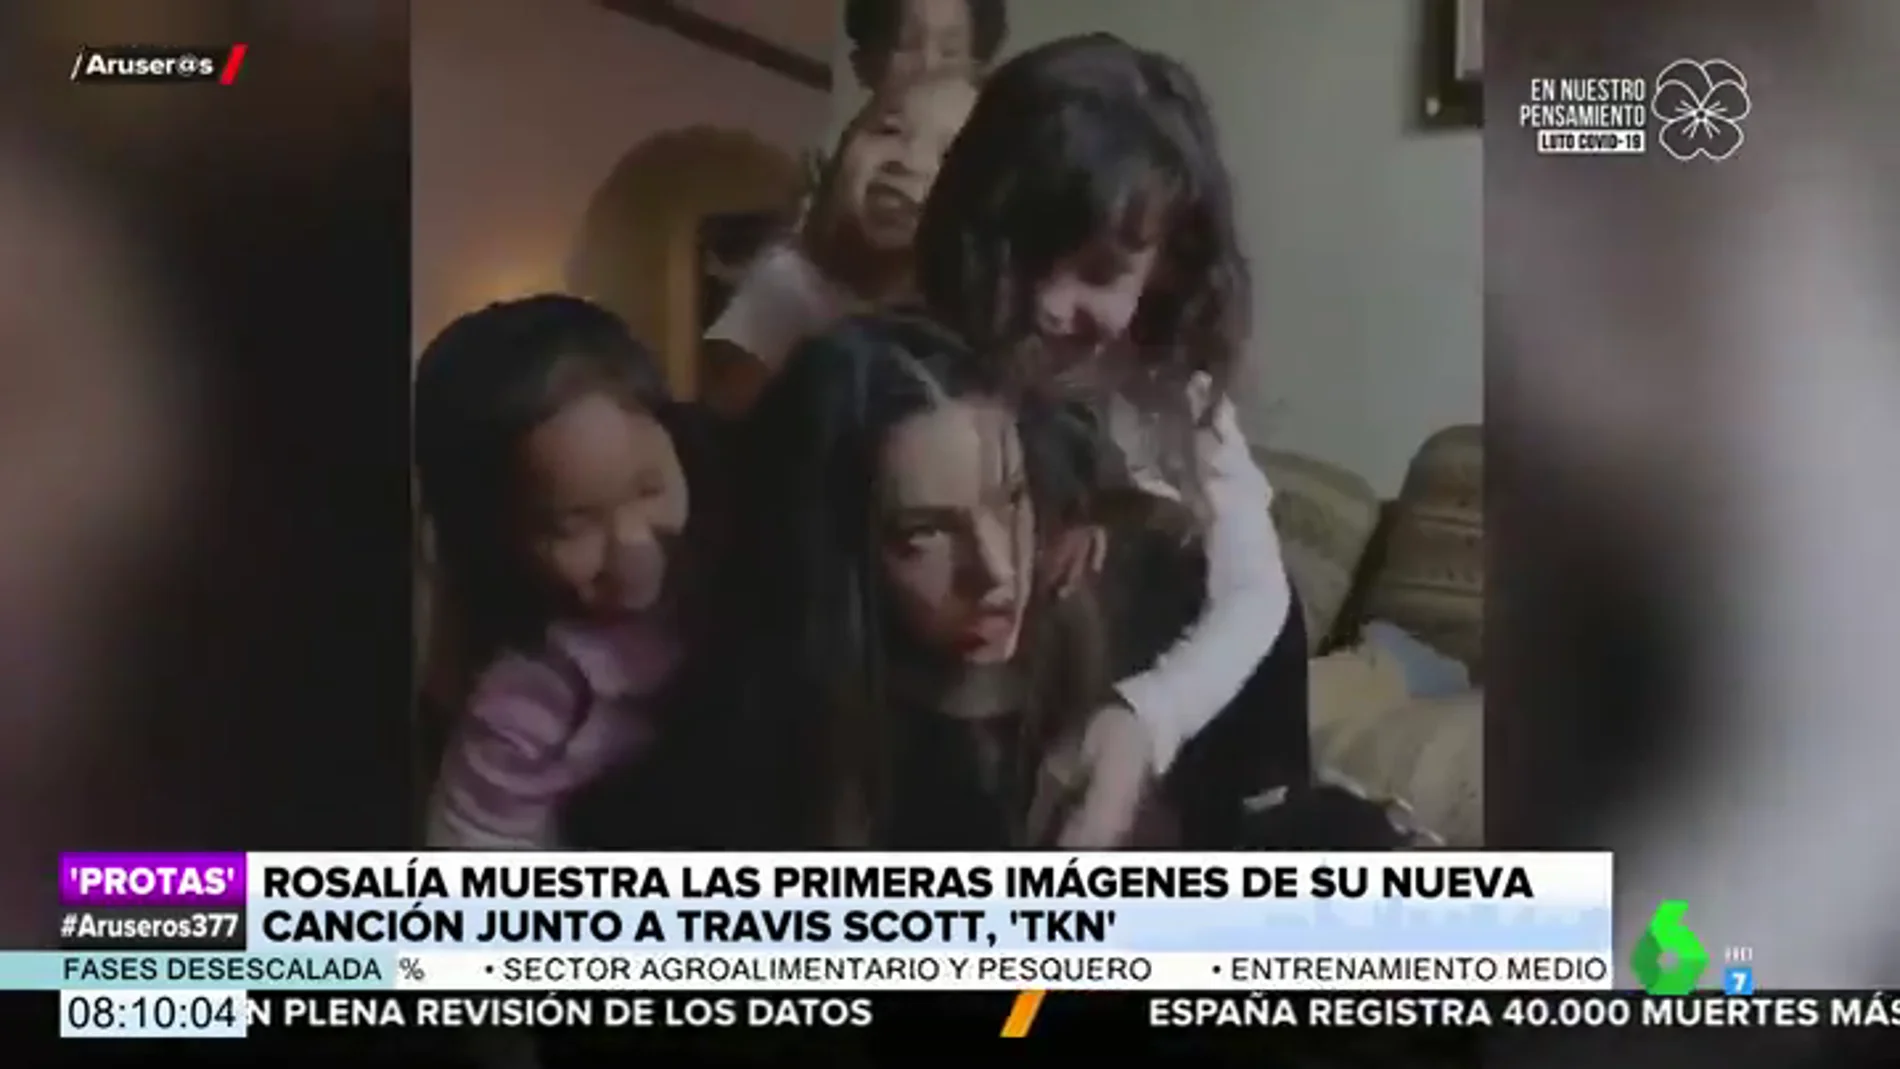 Salen a la luz las primeras imágenes de 'TKN', la esperada canción de Rosalía y Travis Scott